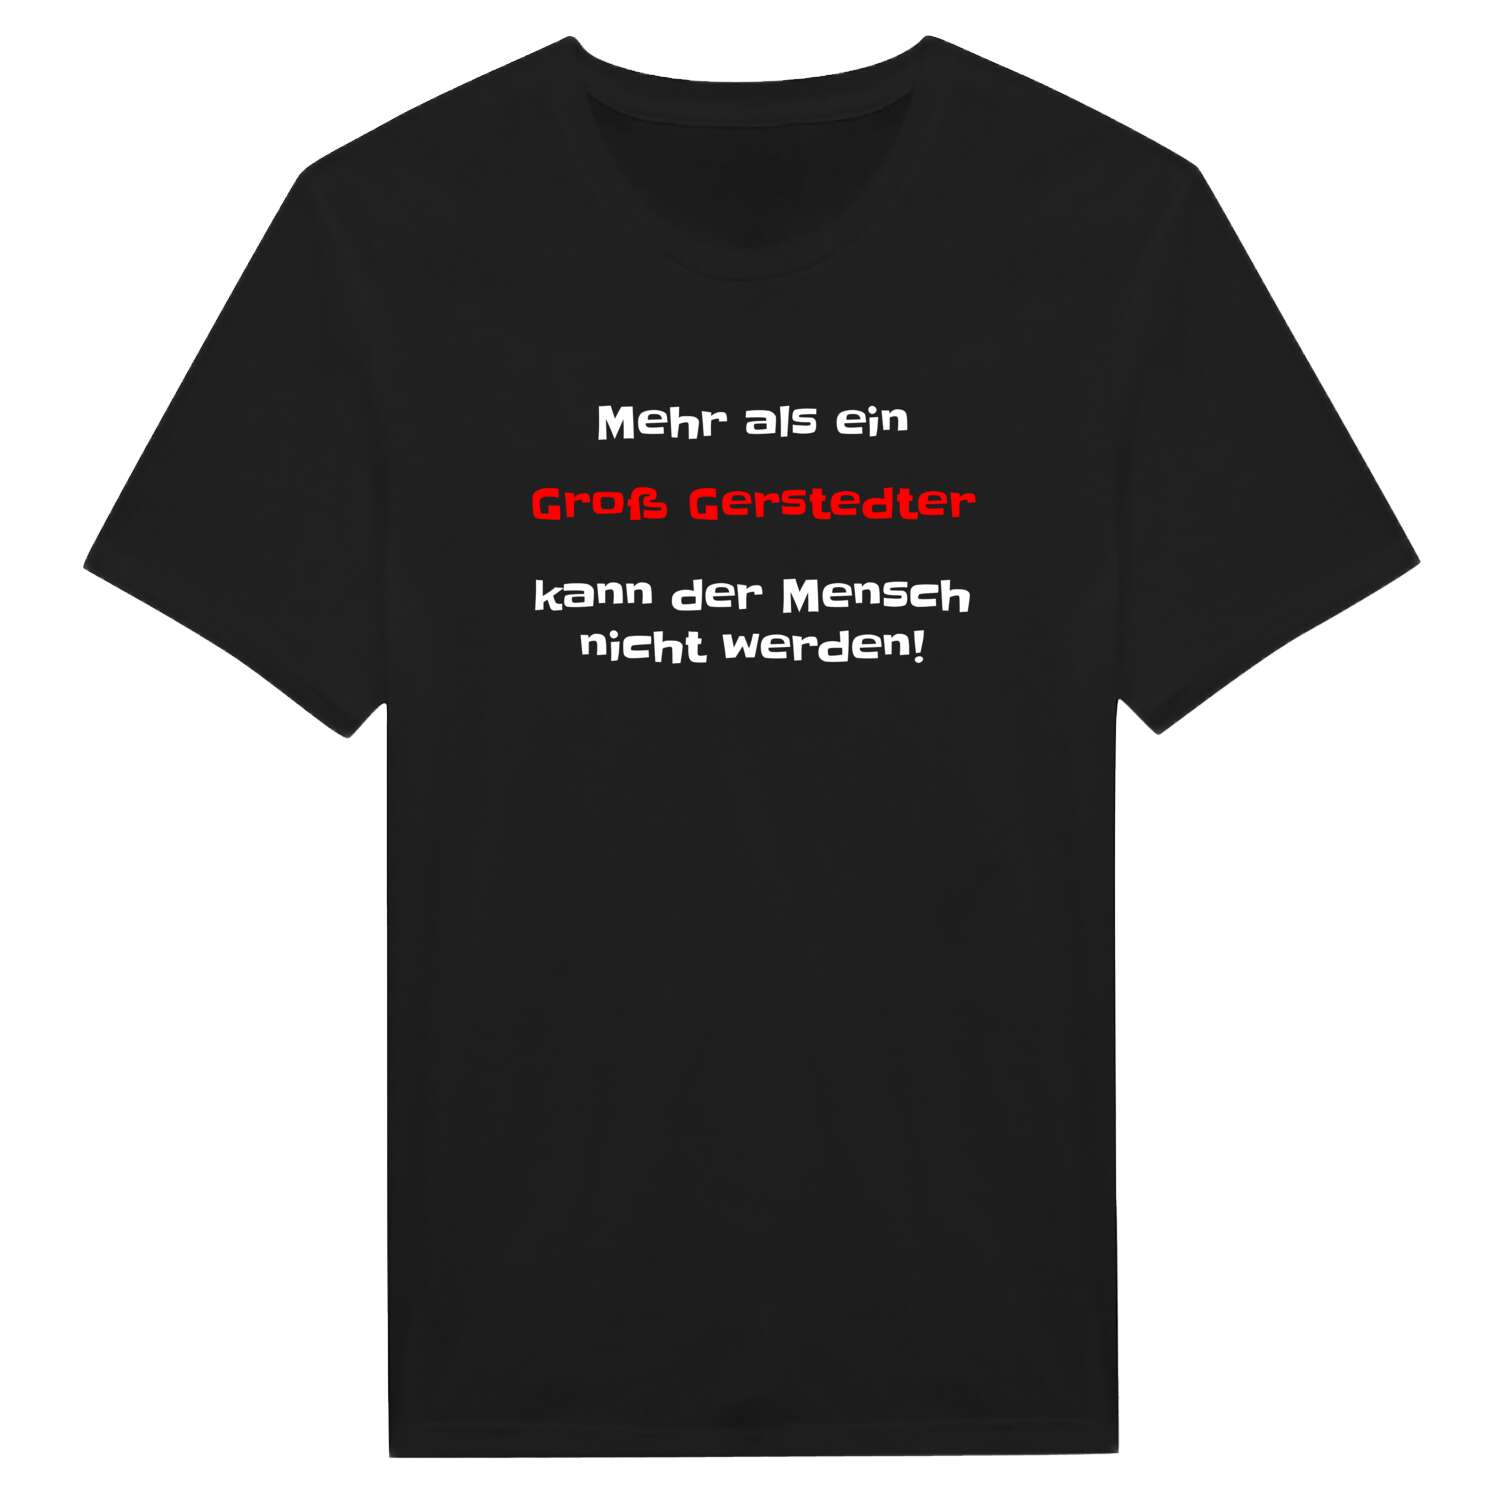 Groß Gerstedt T-Shirt »Mehr als ein«